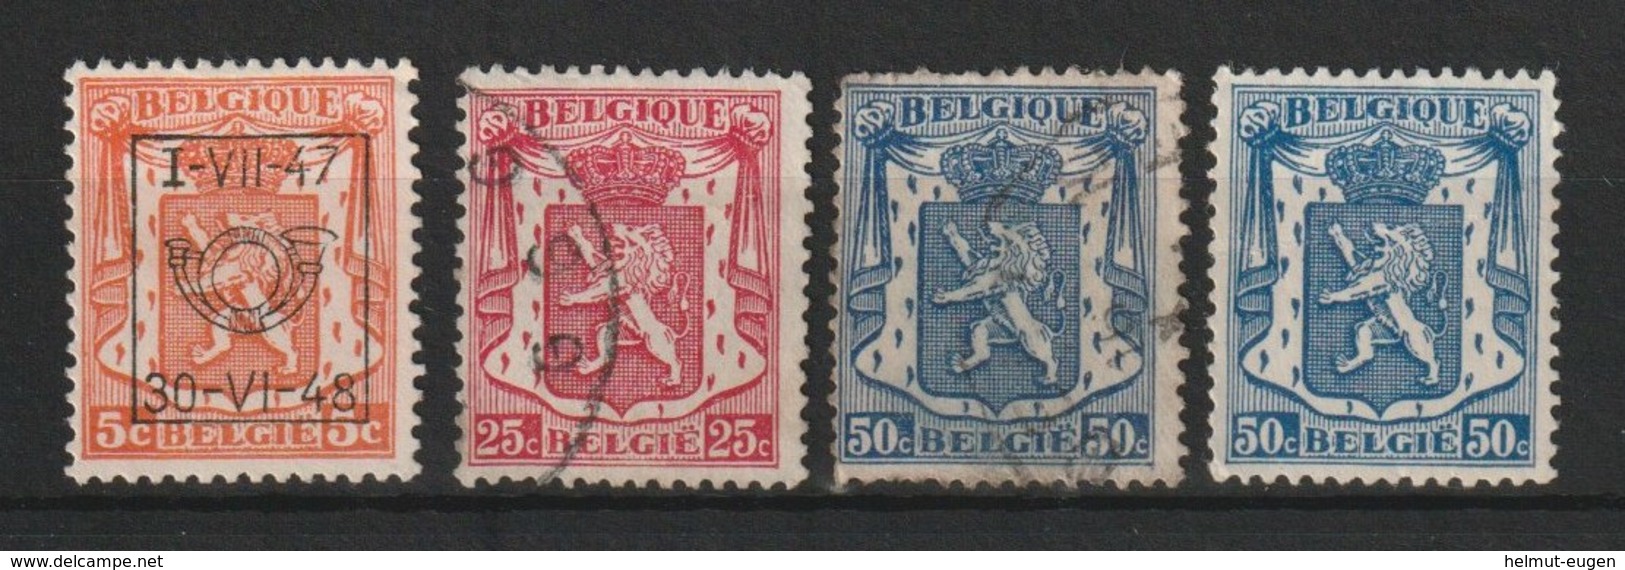 MiNr. 415, 419, 422 Belgien / 1936, 5. Febr. Freimarken: Staatswappen - 1929-1937 Heraldischer Löwe